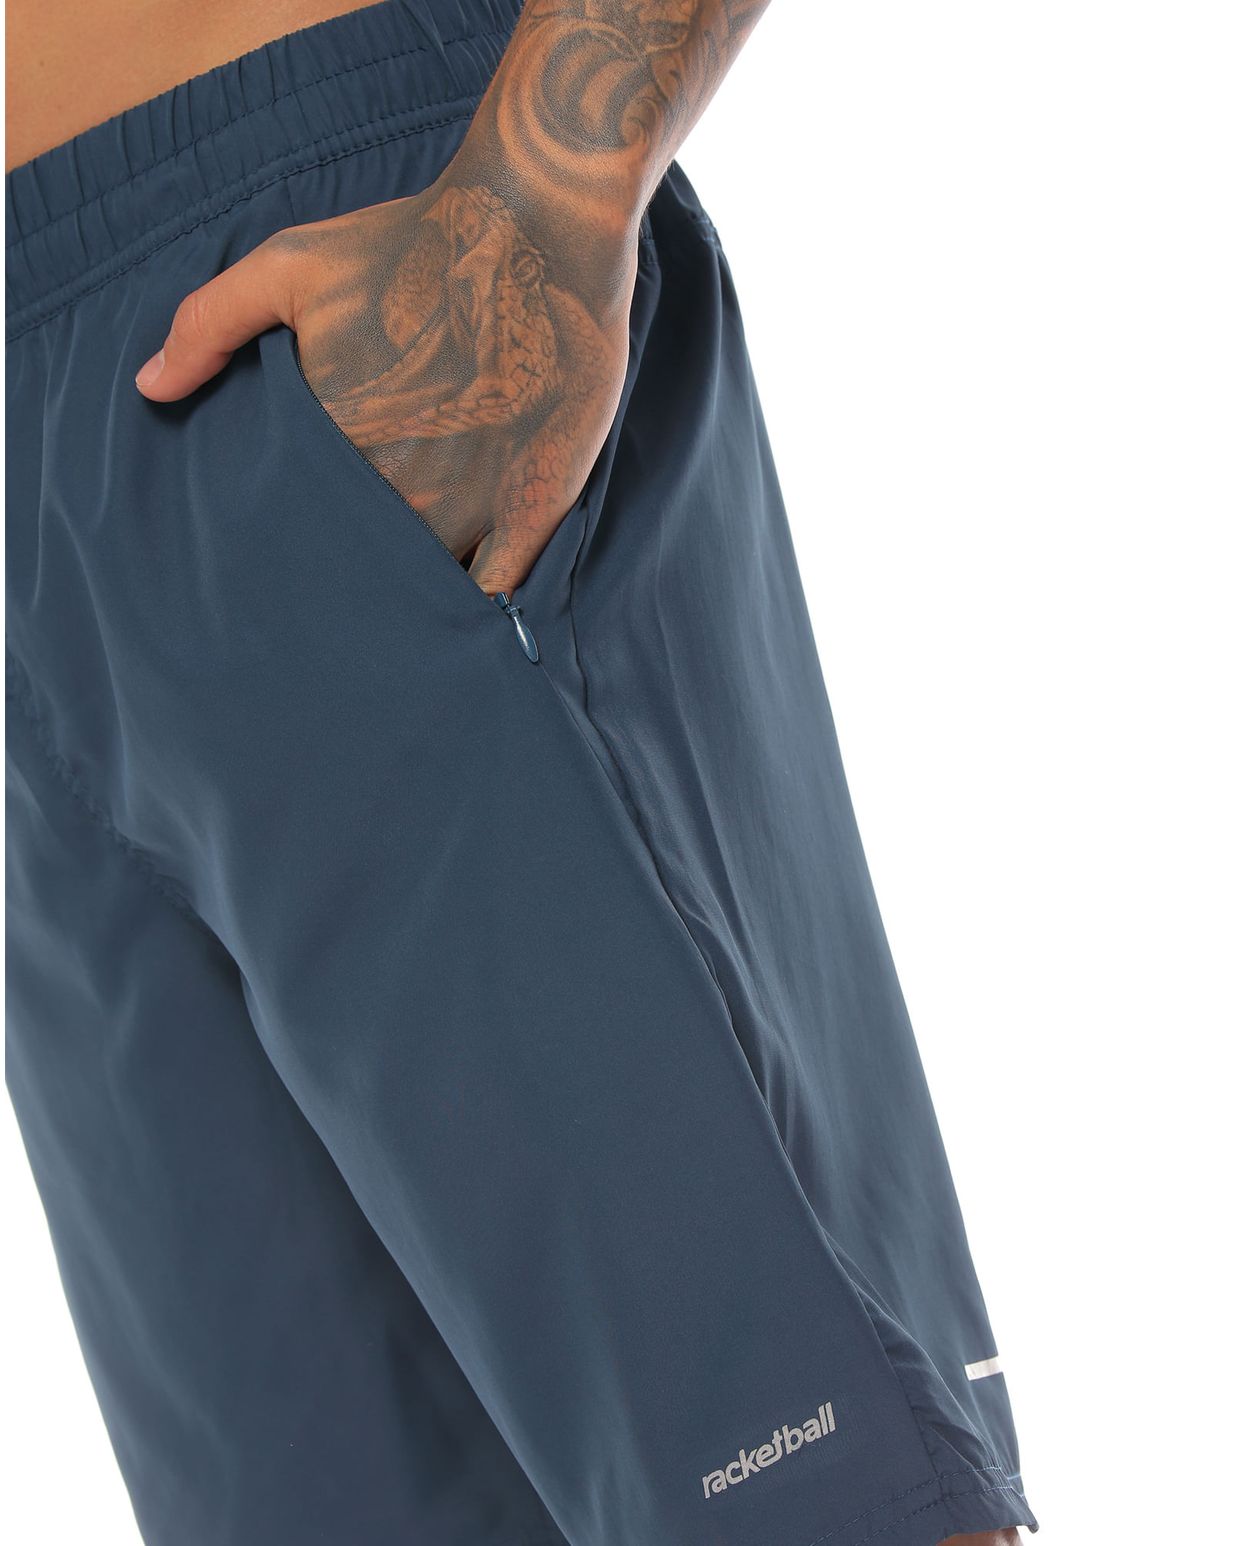 pantaloneta deportiva color petroleo con bolsillo parte lateral derecha